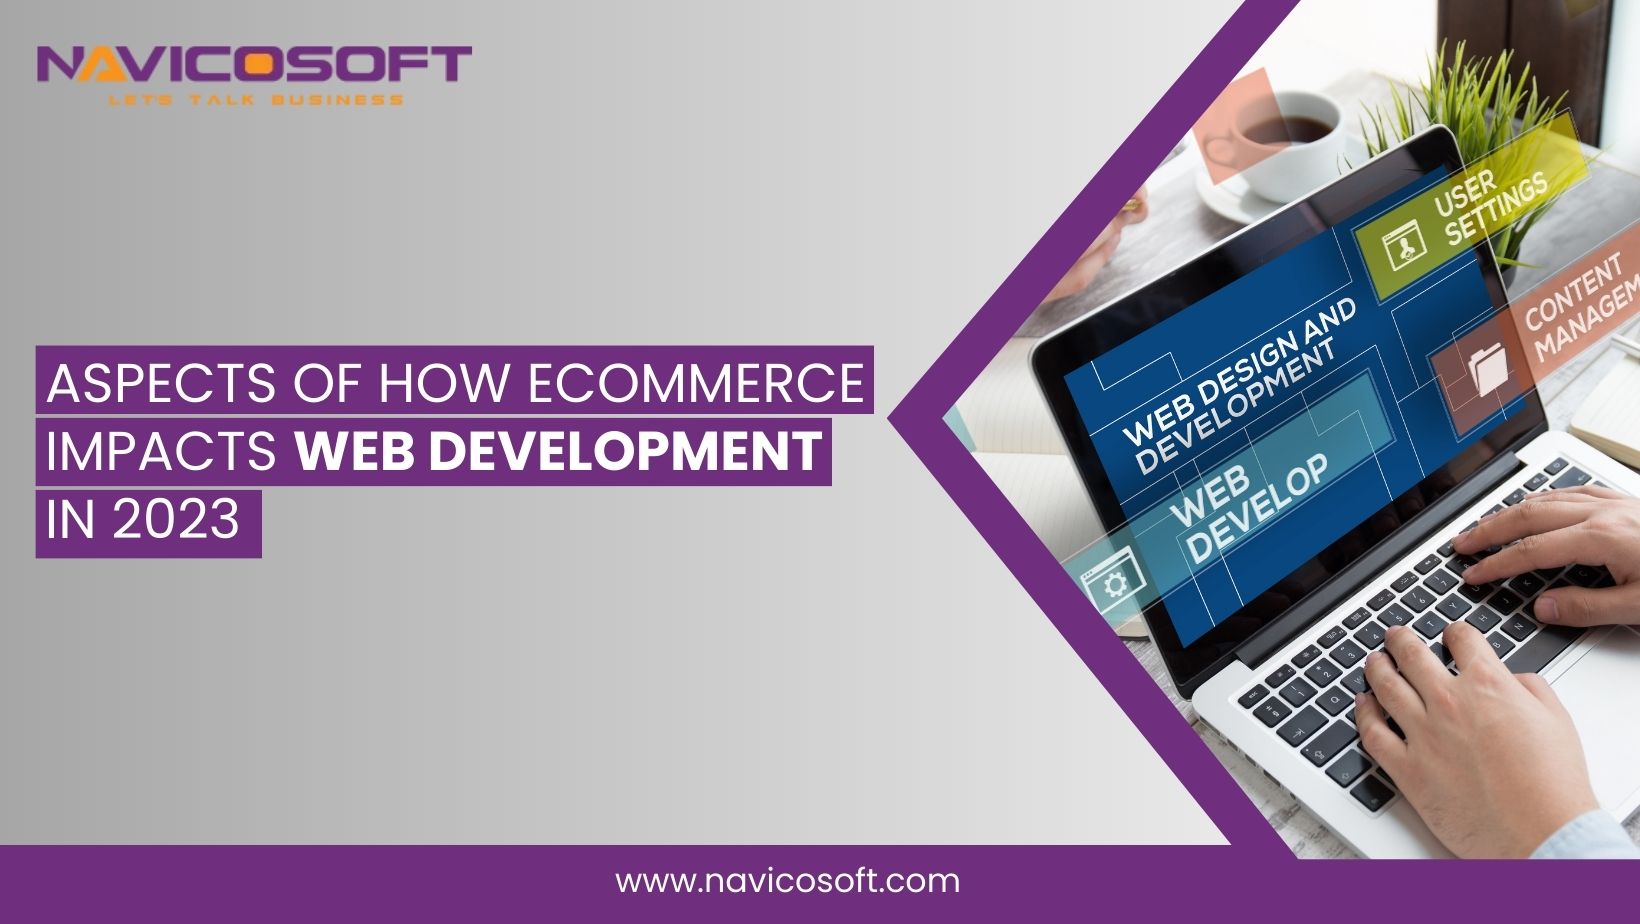 ecommerce impacts web development